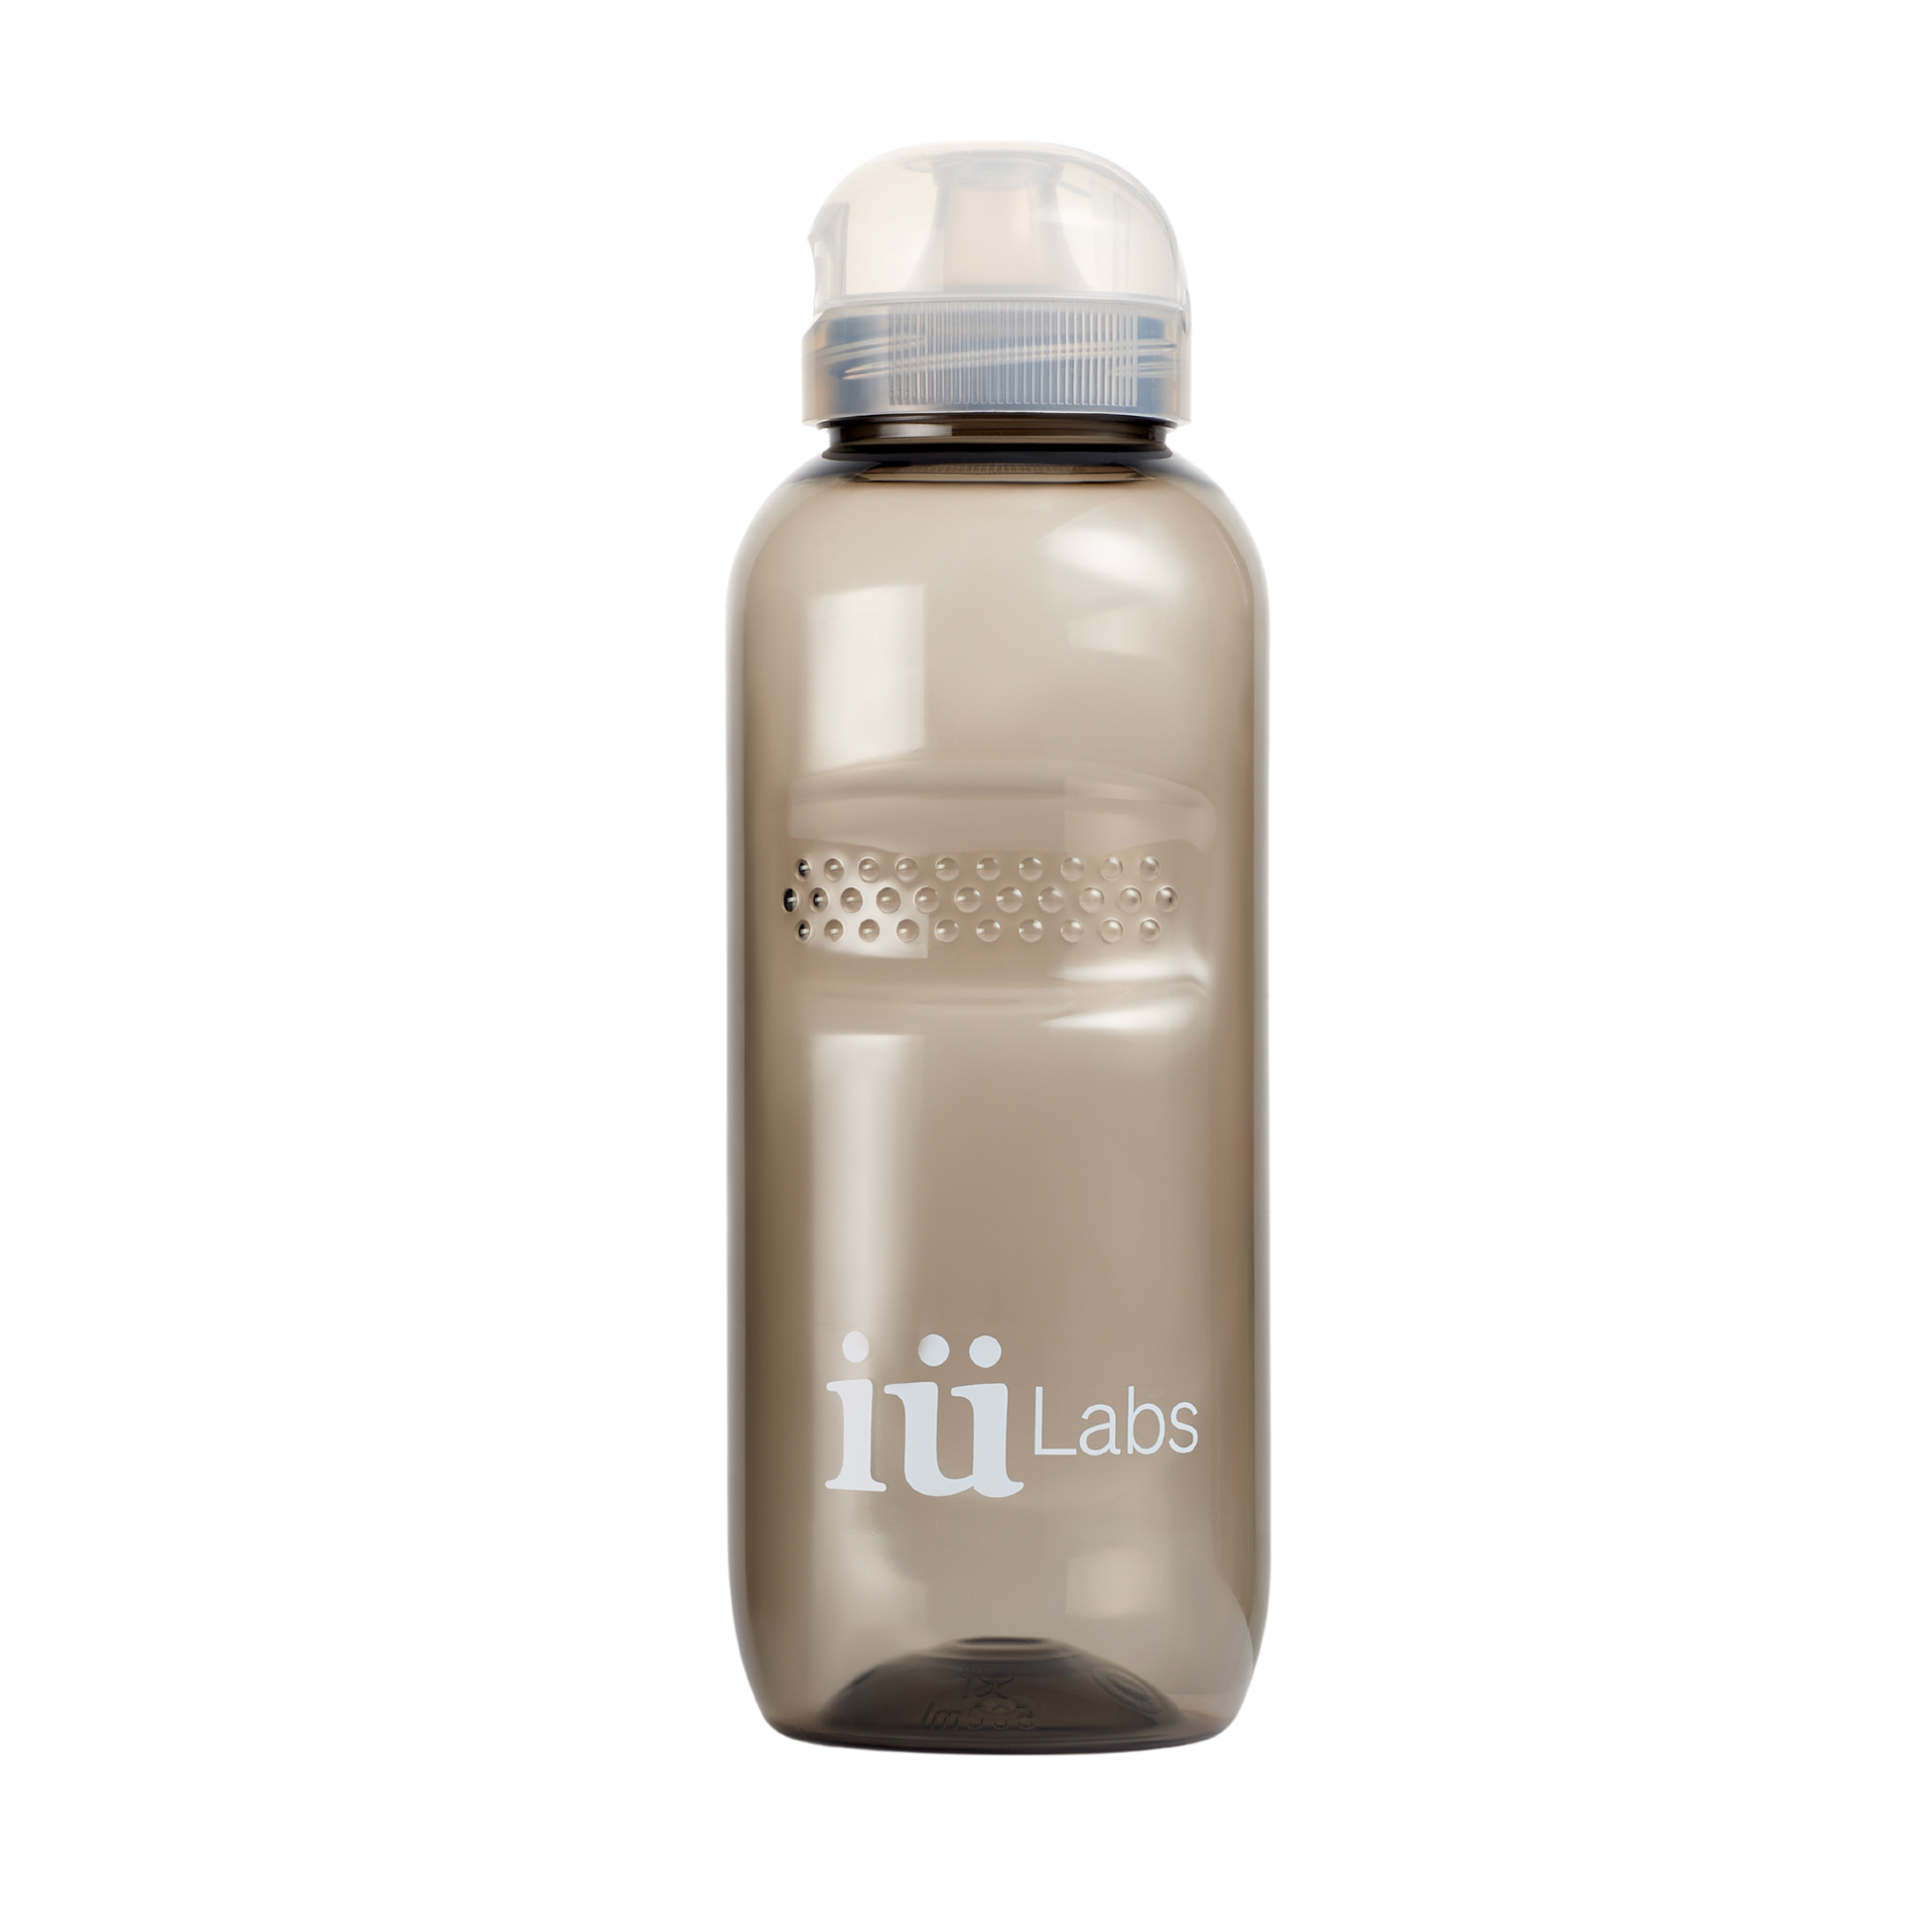 iüLabs grey transparent water bottle to make, shake, and drink iüLabs supplement drinks